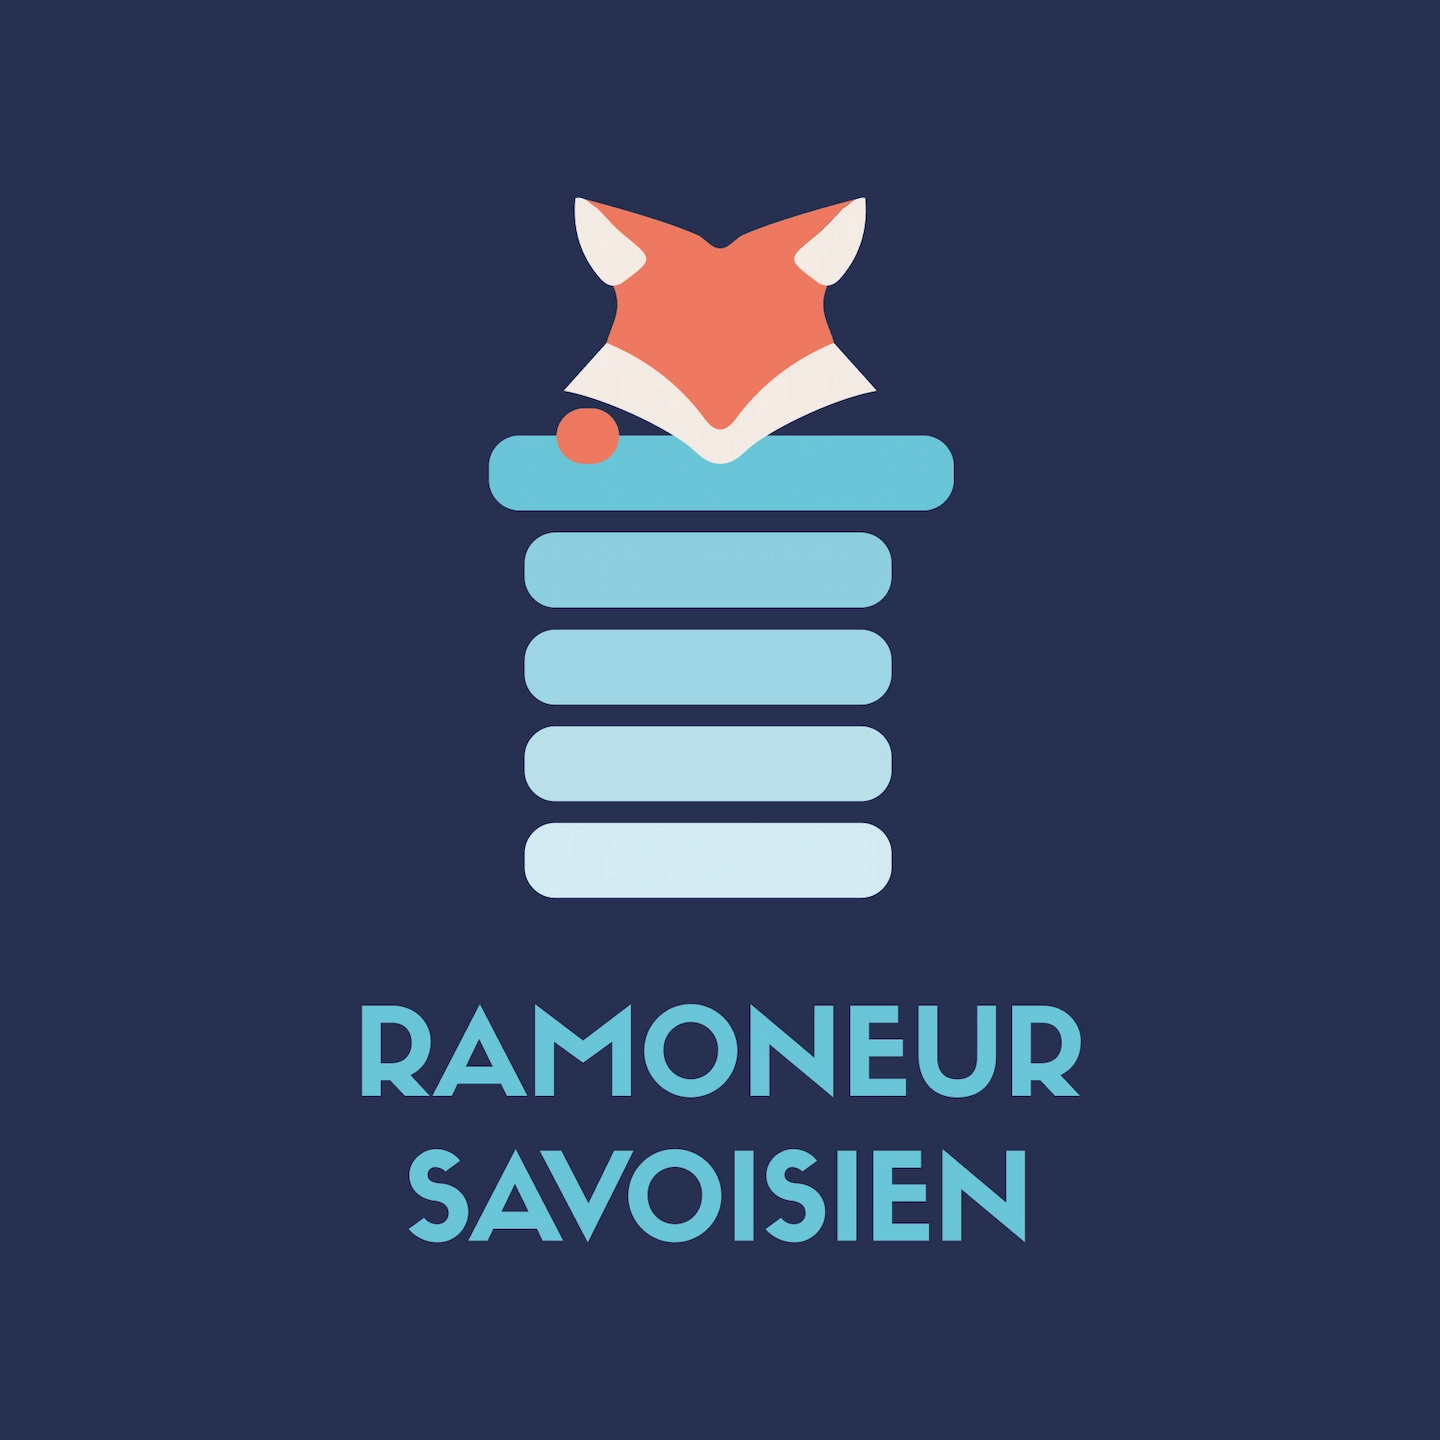 Le logo du Ramoneur Savoisien, présente un renard et une cheminée